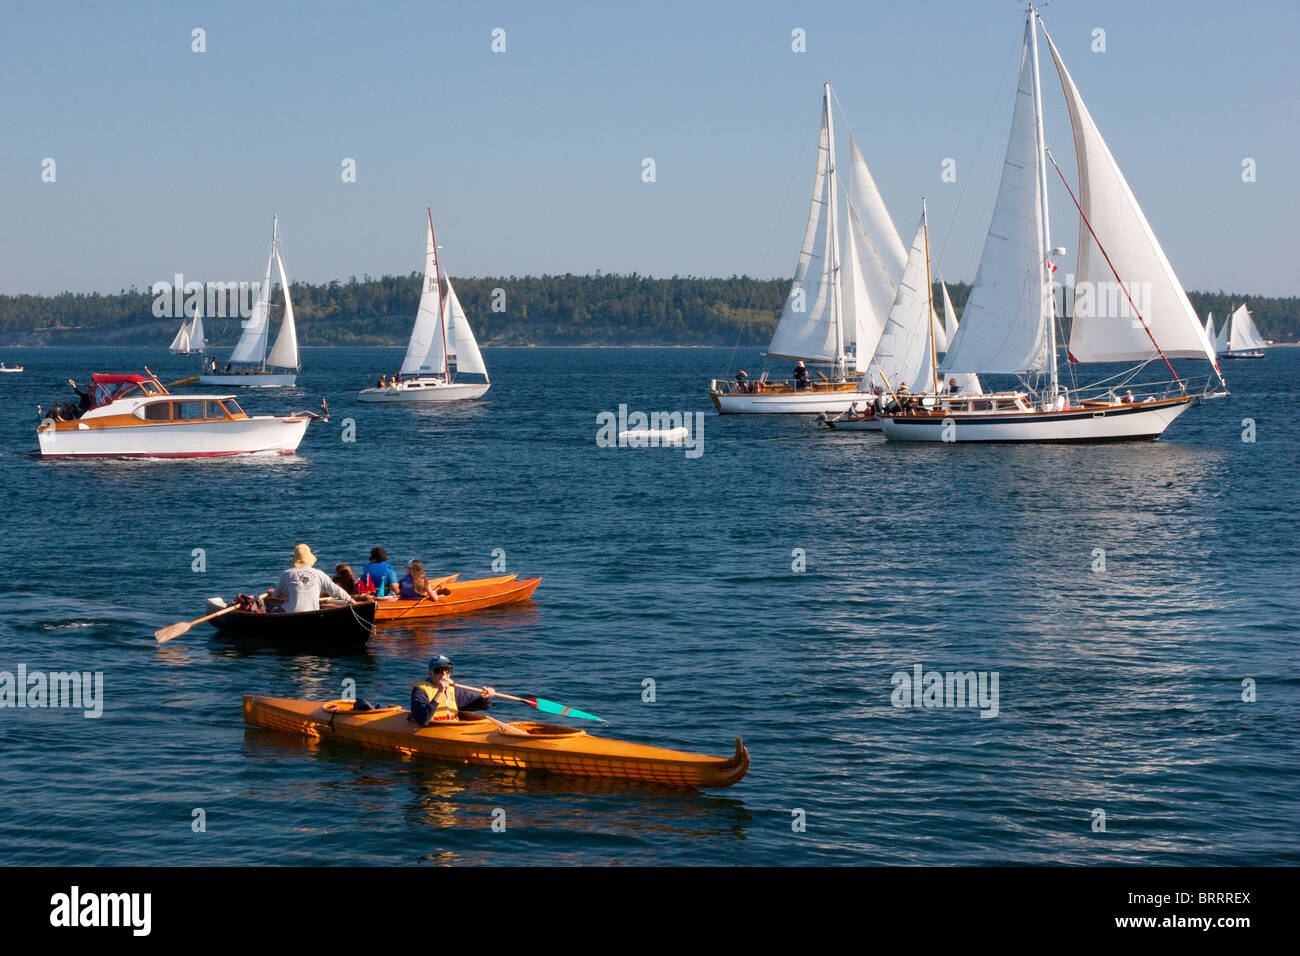 Grandi e piccole imbarcazioni a vela di legno barca a vela e kayak kayakers in barca di legno Festival, Port Townsend, Washington, Stati Uniti d'America Foto Stock